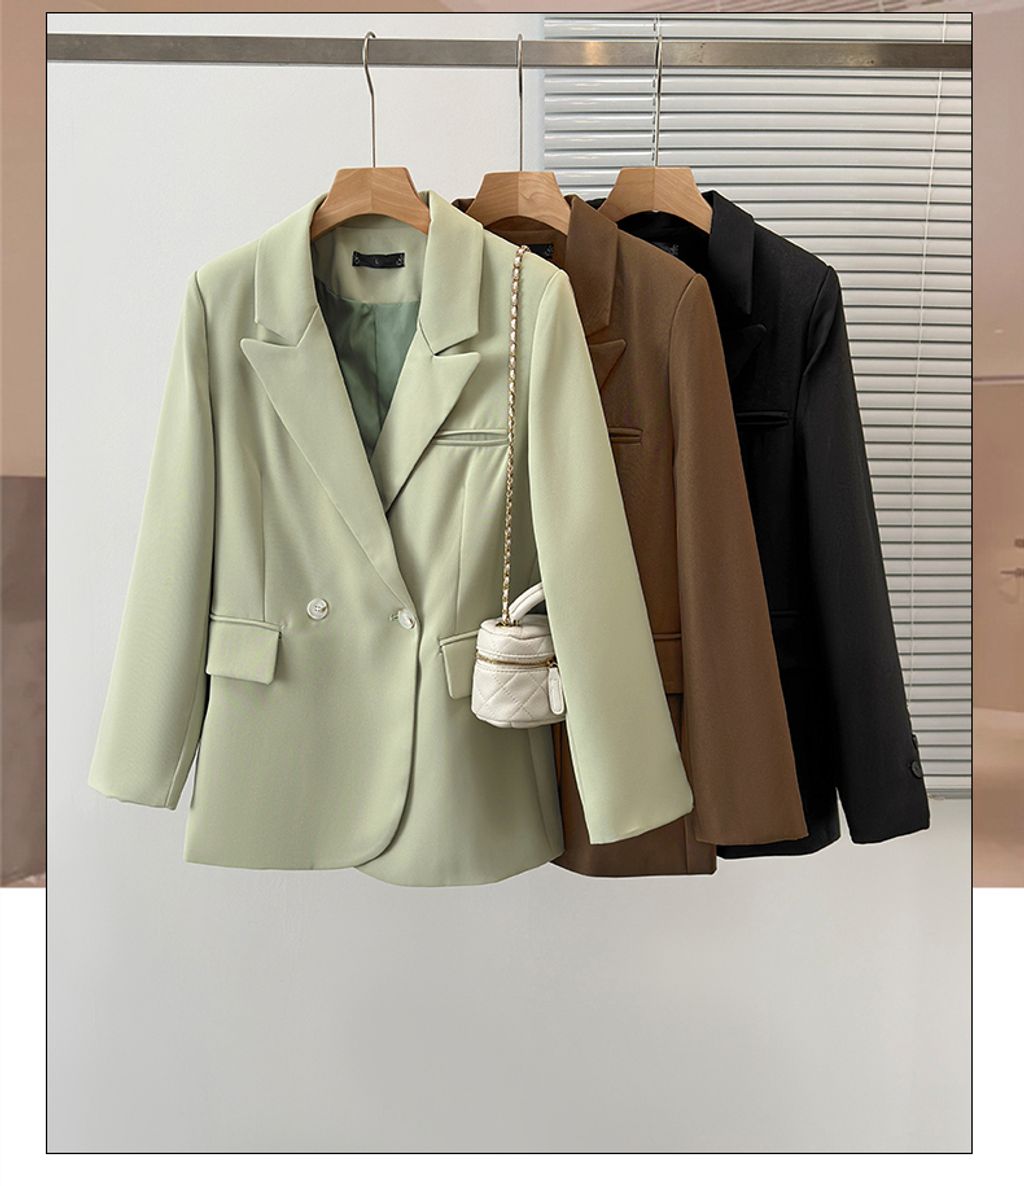 Pure Lust Style Versatile Plus Size Women's Suit Jacket-Black color